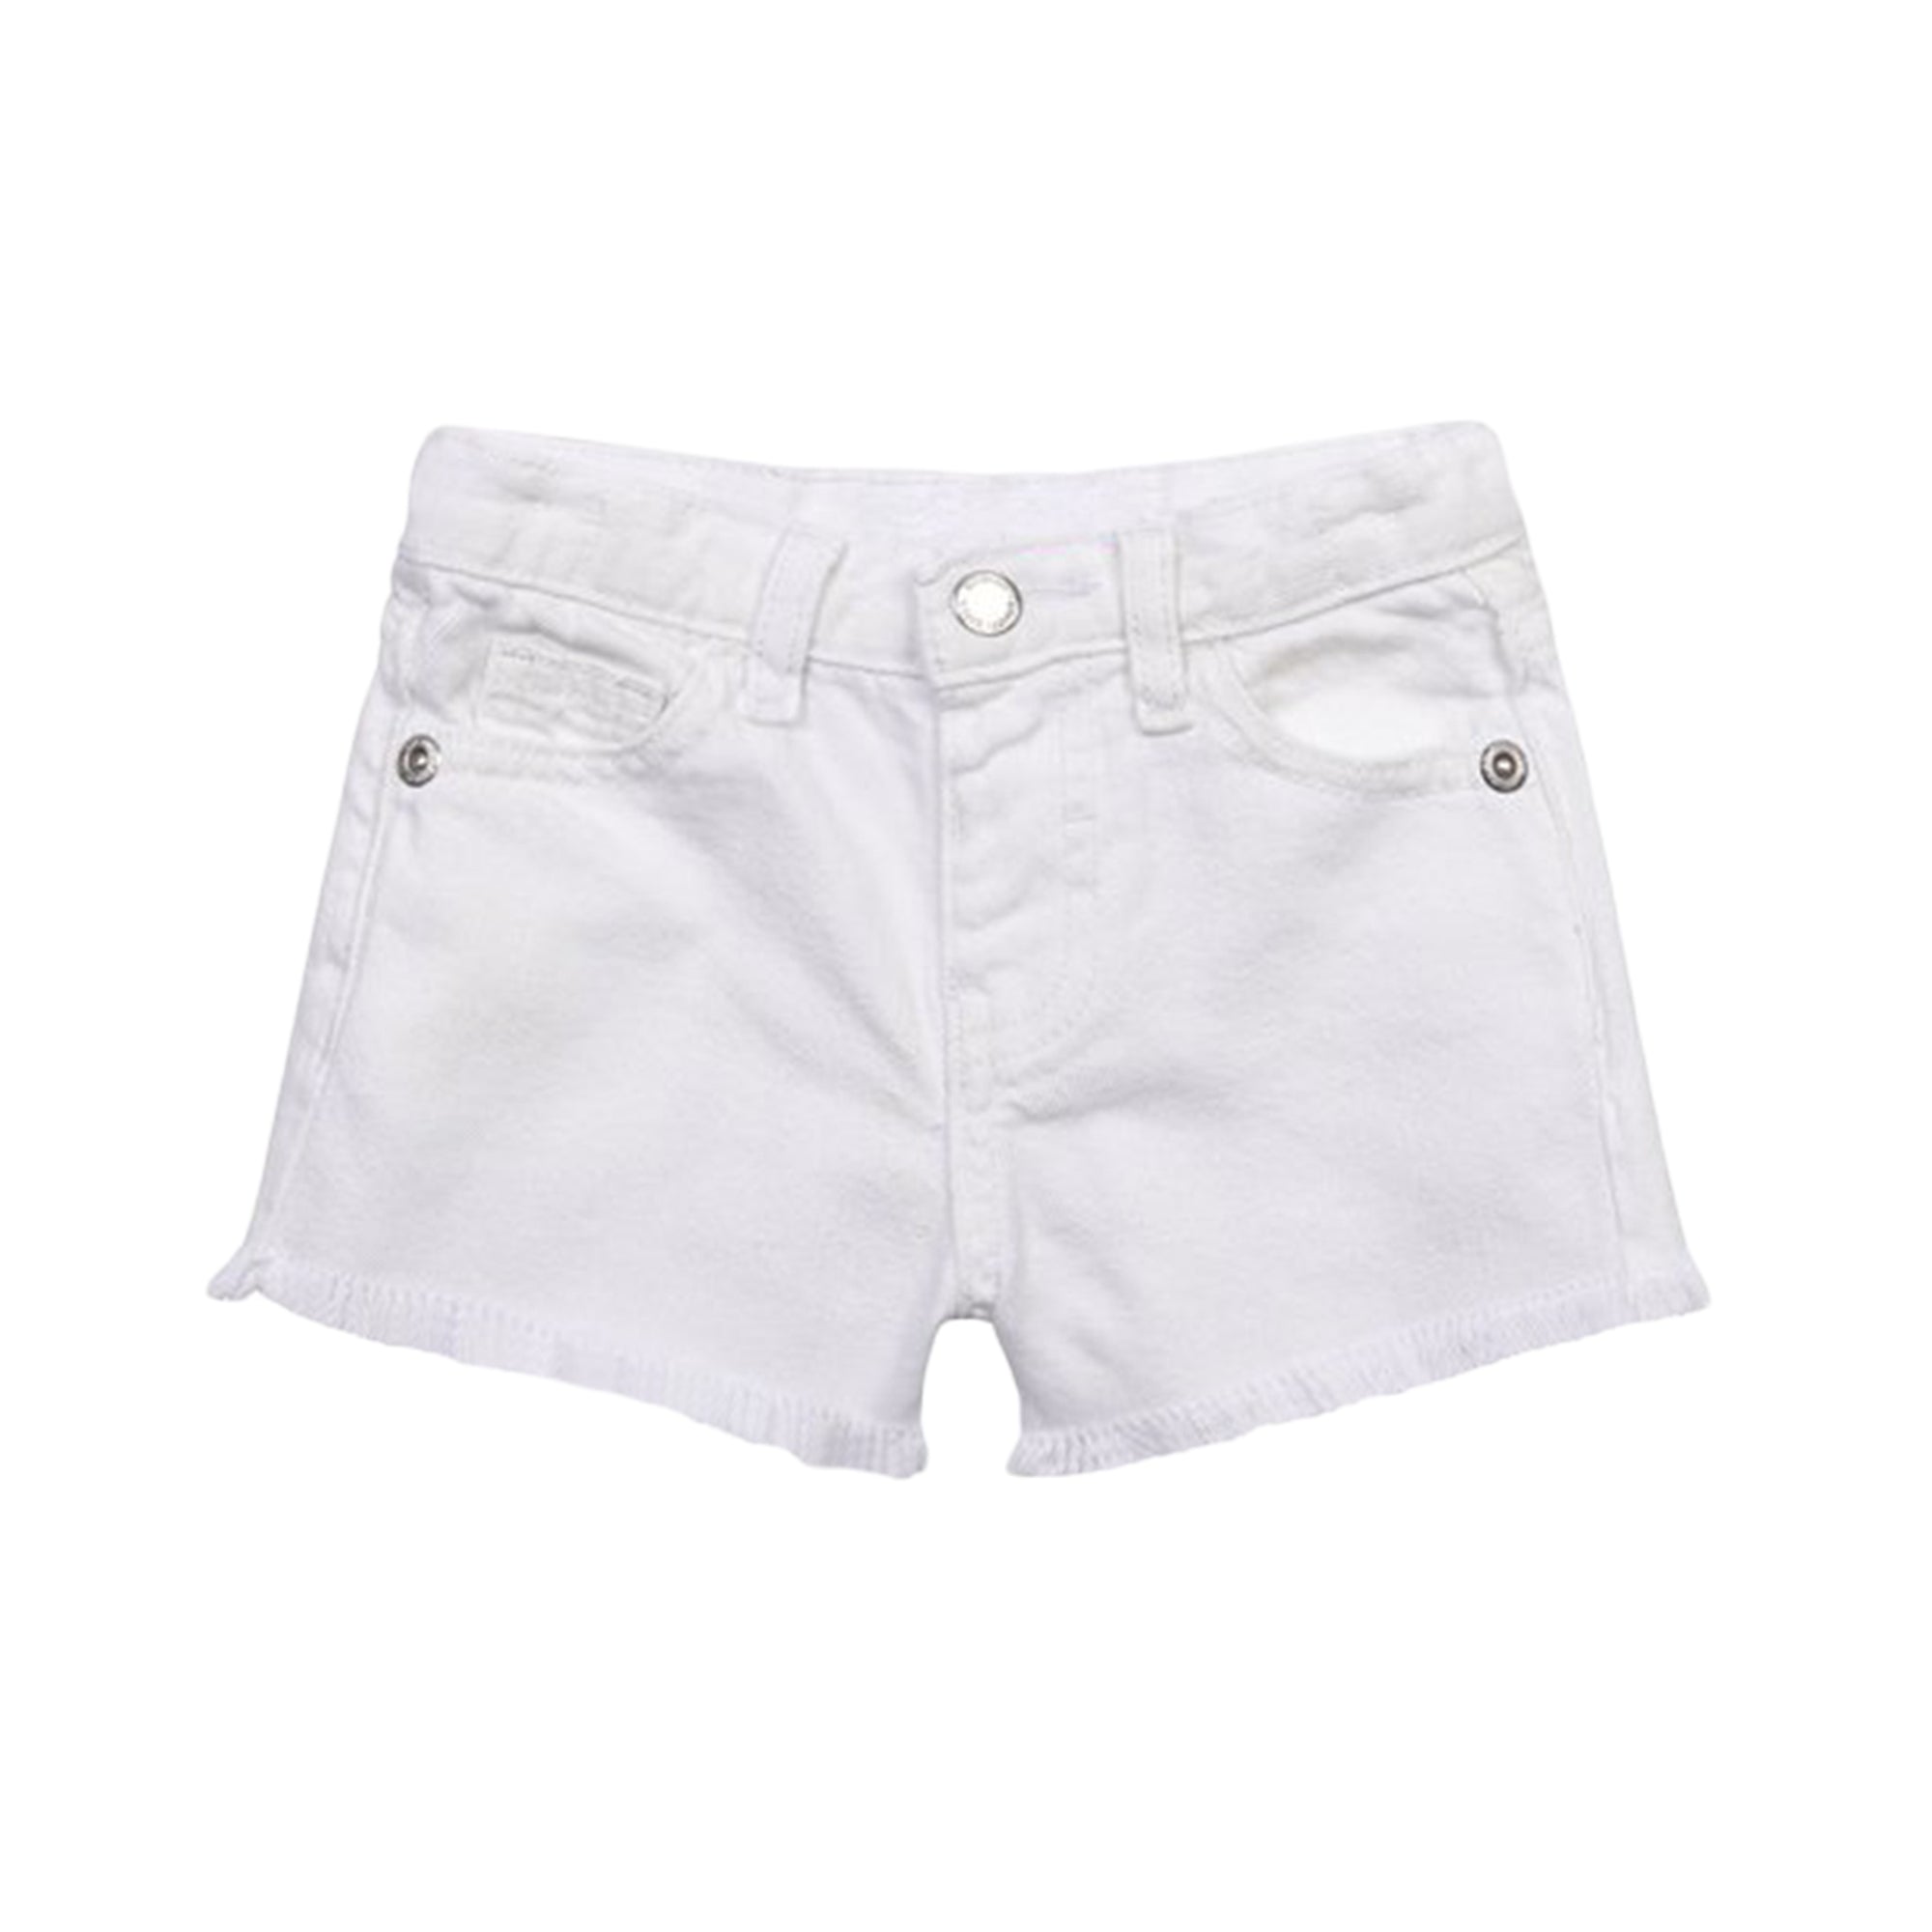 Girls' White Frayed Denim Shorts